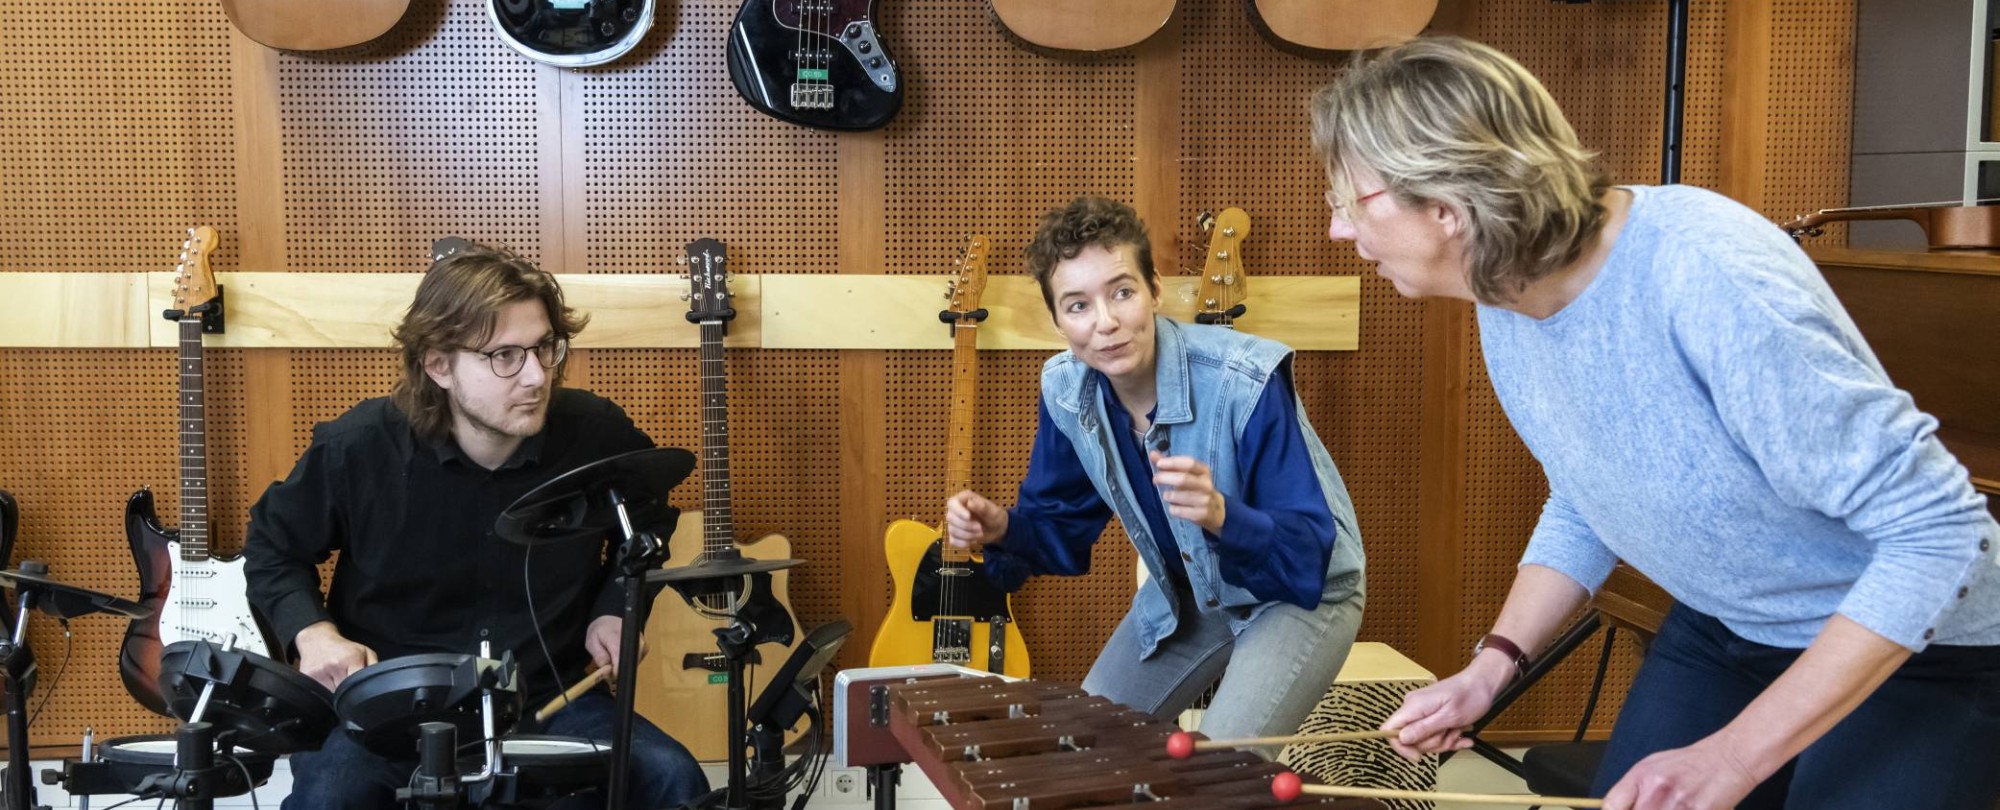 een docent en twee studenten van de han master vaktherapie muziektherapie maken samen muziek op een drumstel en marimba